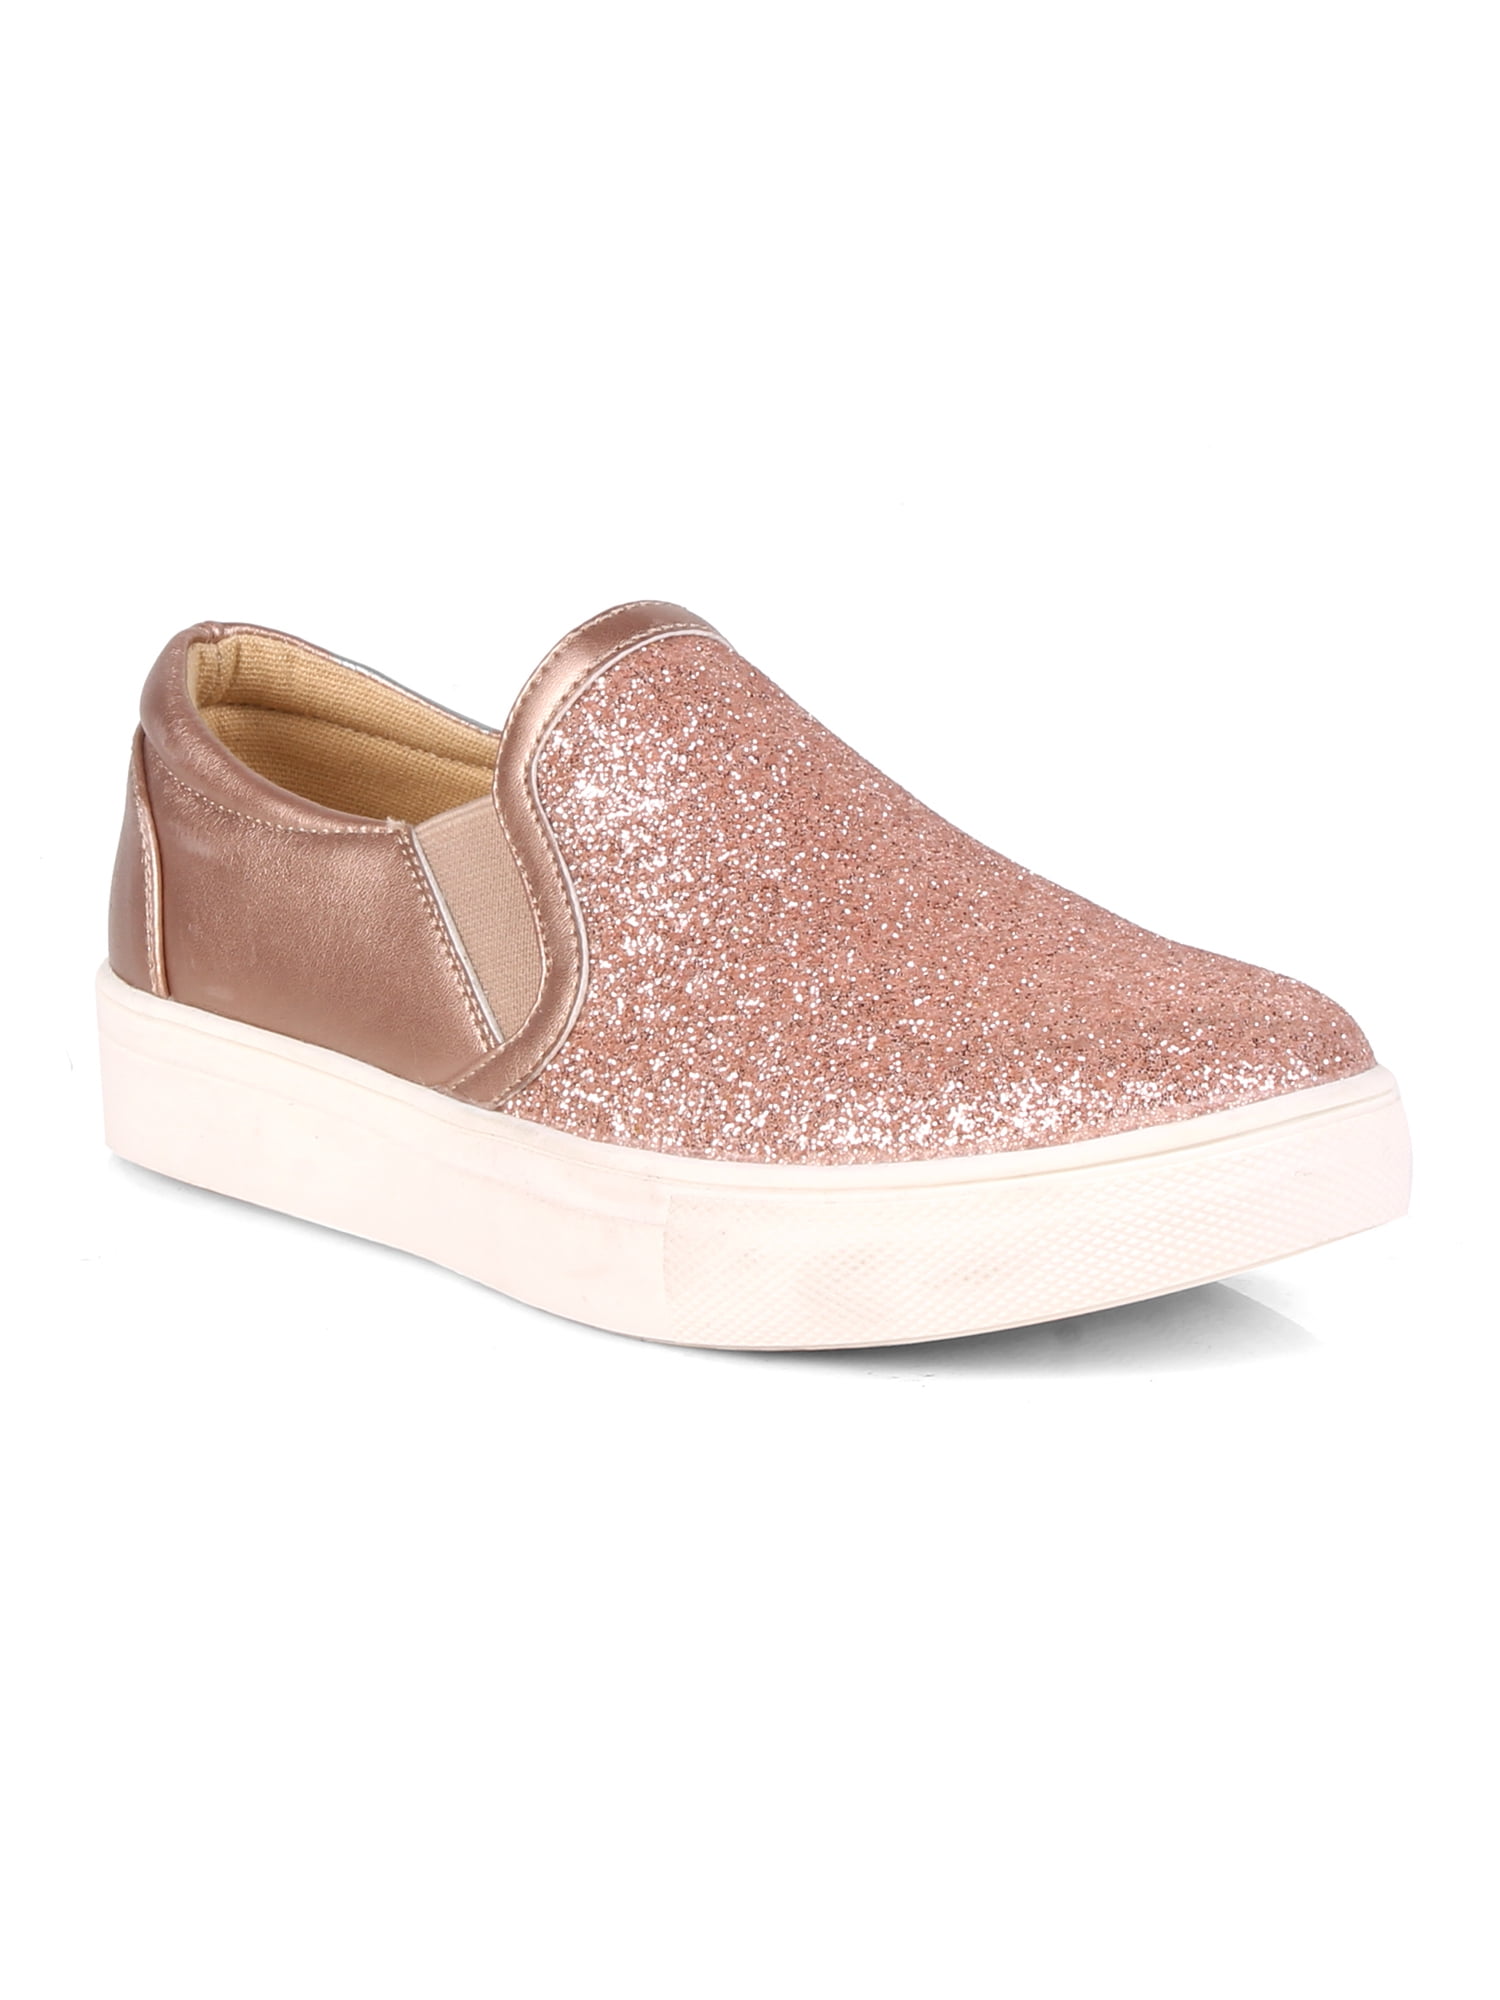 Slip On Glitter Women's Sneakers in Champagne - Walmart.com